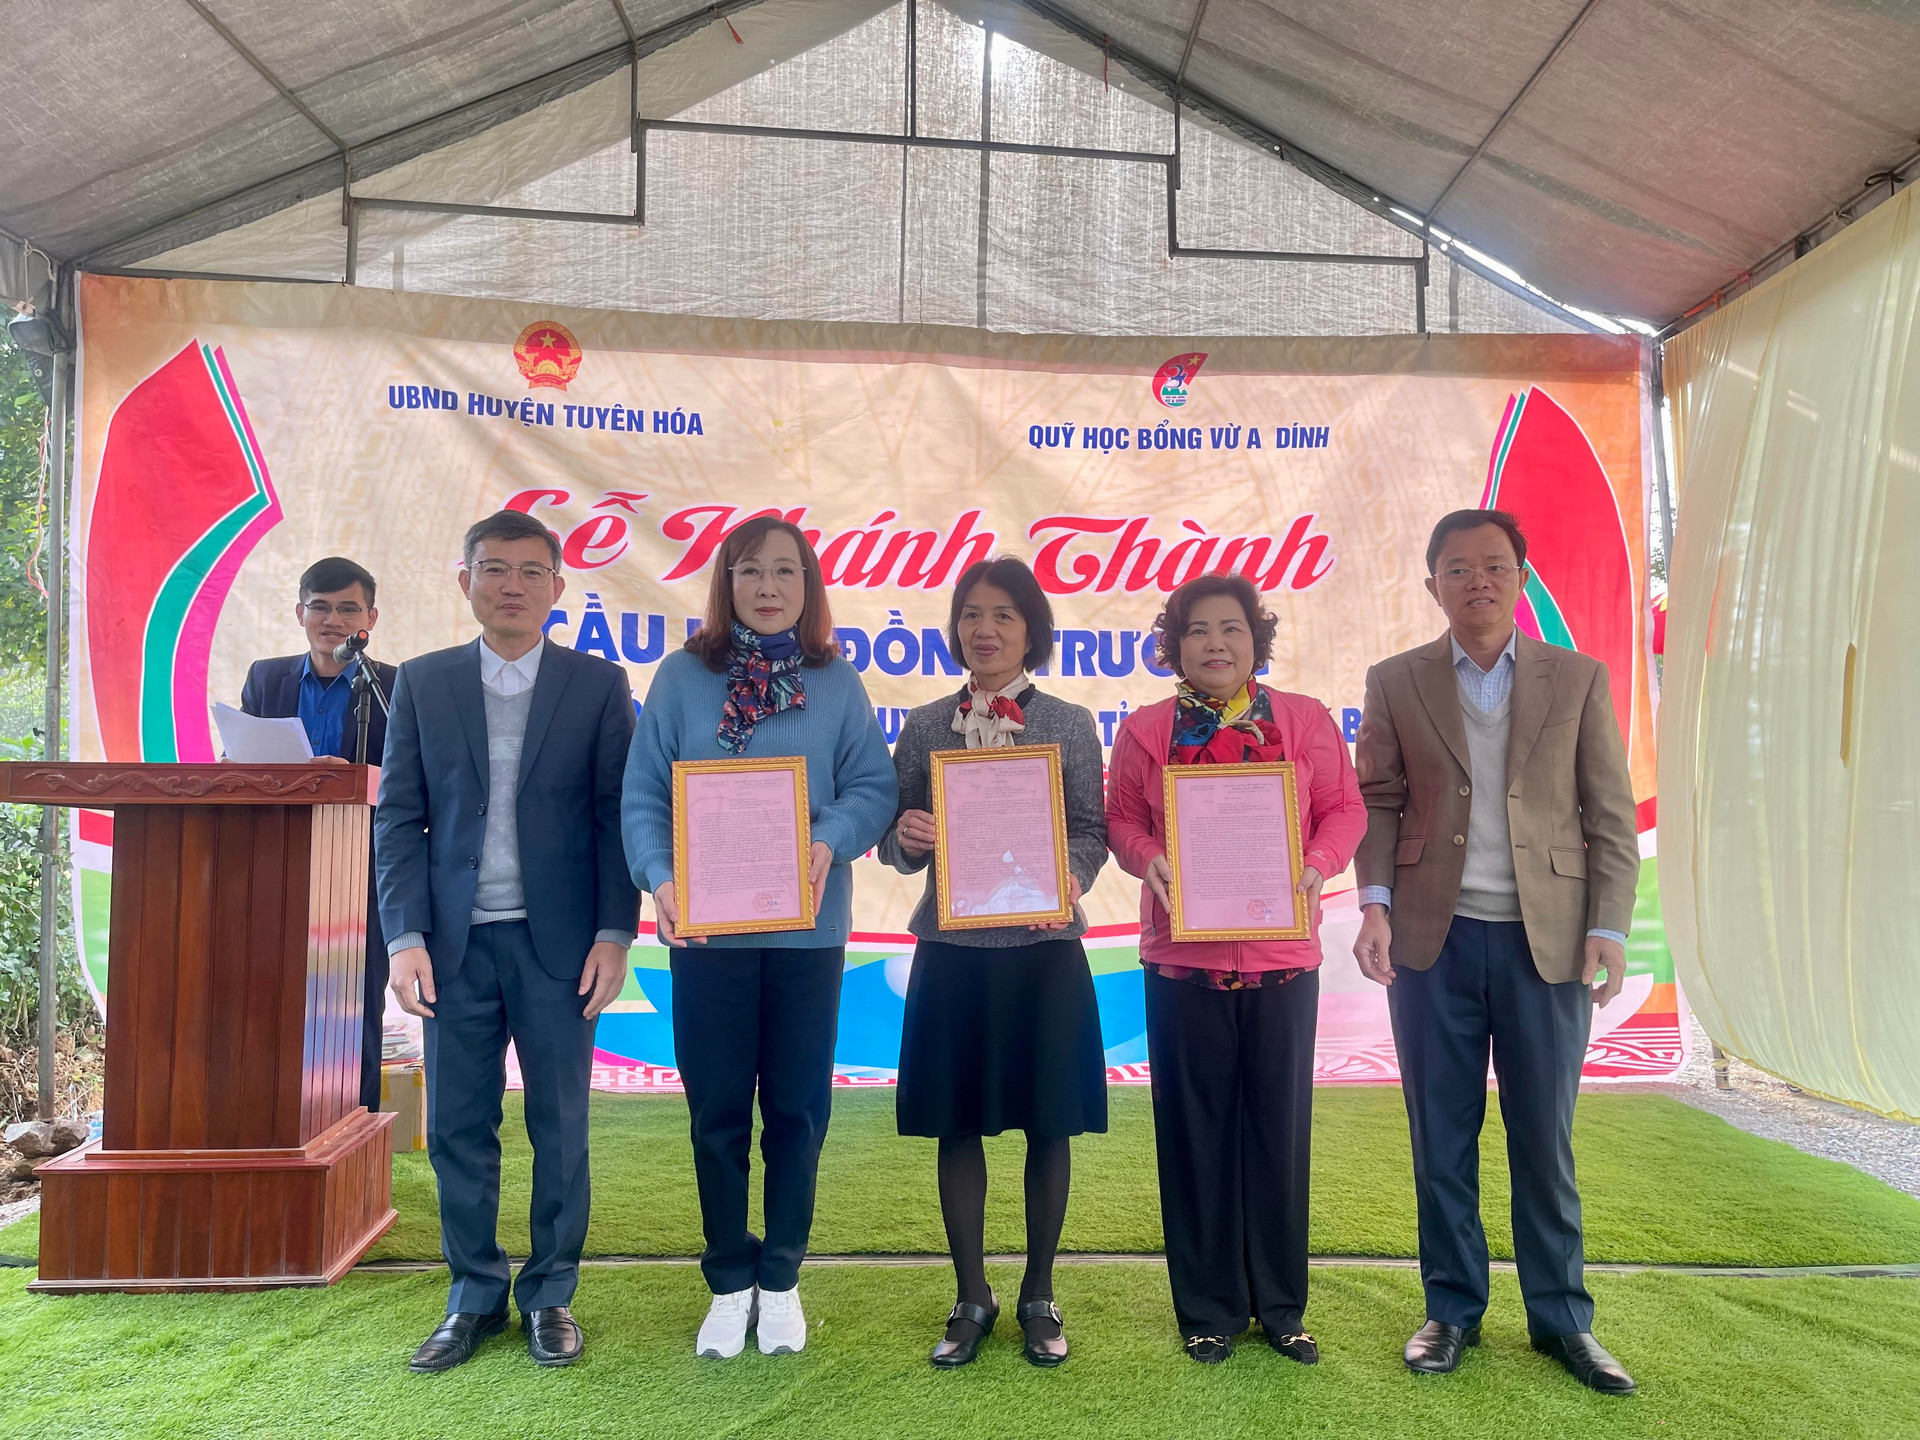 Quỹ học bổng Vừ A Dính khánh thành cầu Khe Đồng Trường tại Quảng Bình - ảnh 8